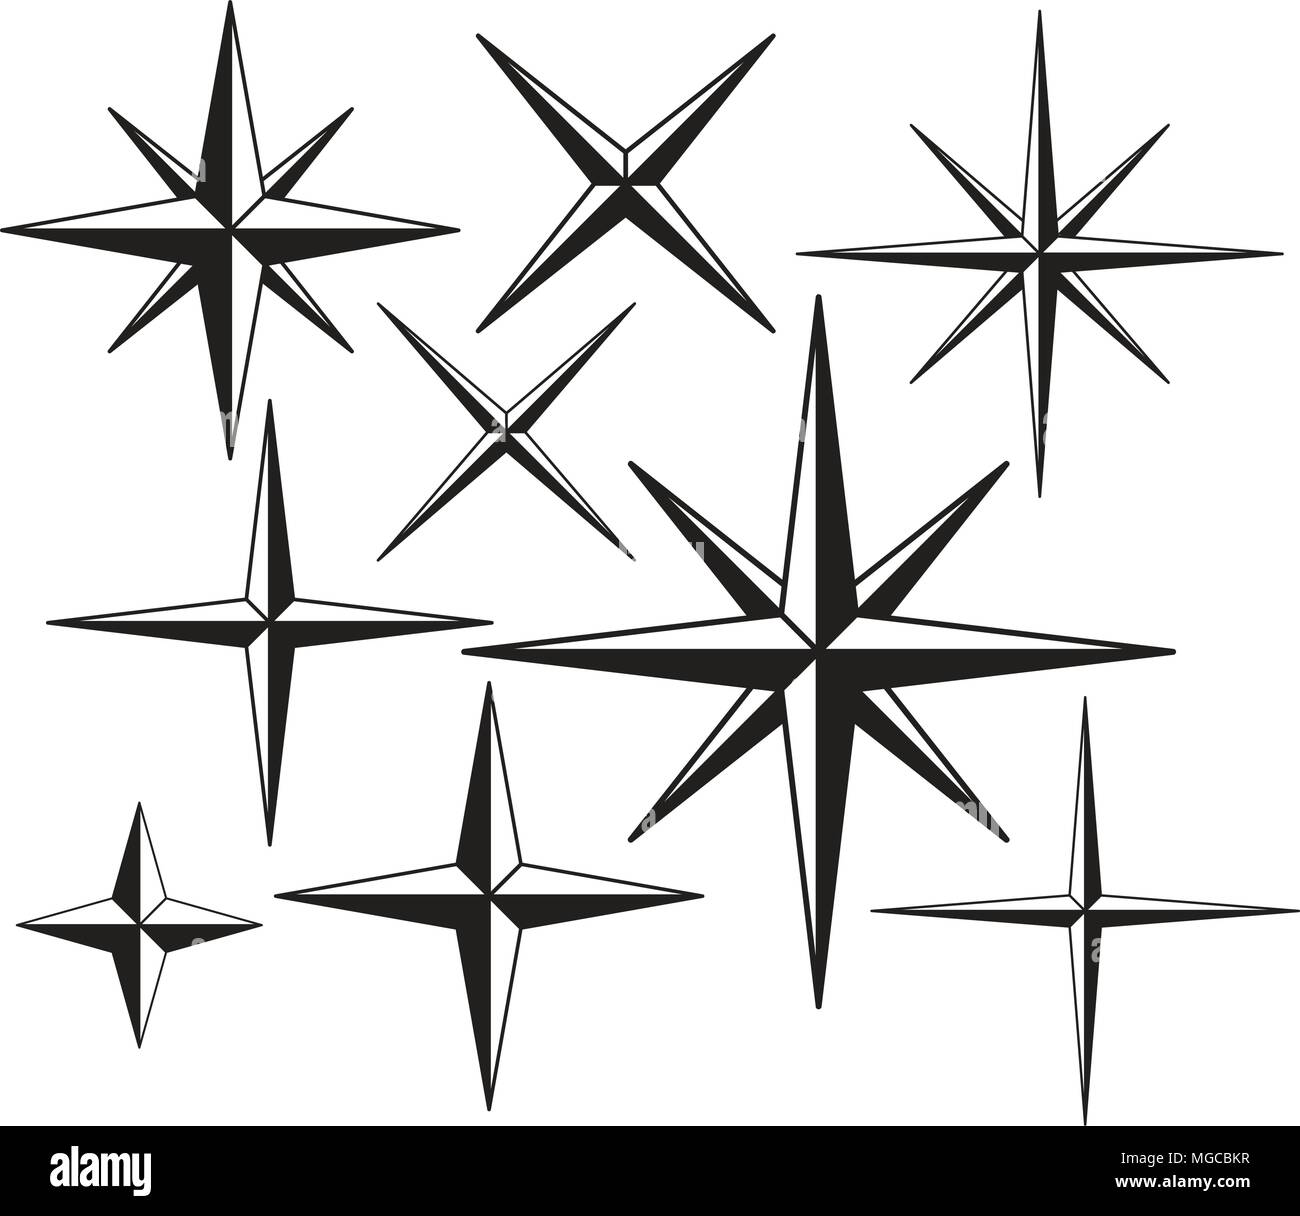 Retro Stars 8 - Retro Clipart Illustration Stock Vector